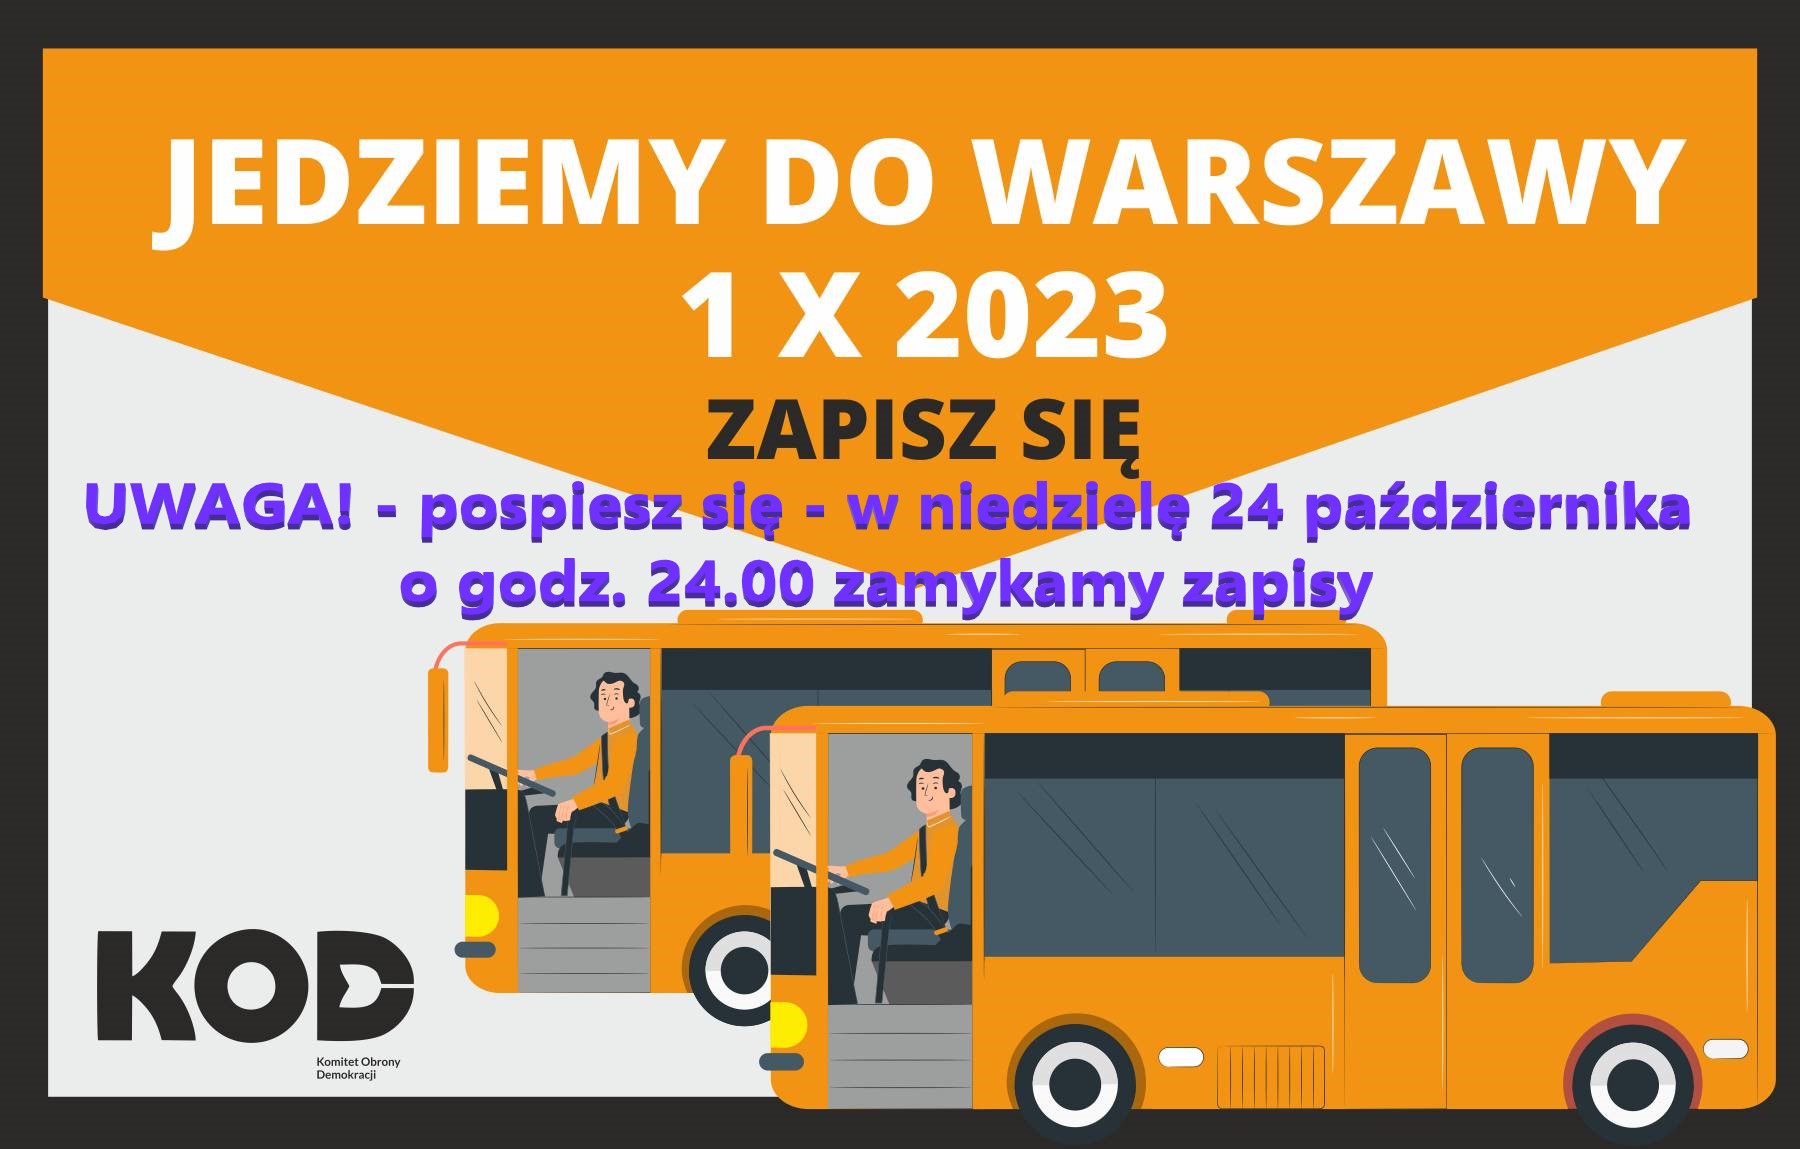 1 października zapraszamy do Warszawy! Prowadzimy zapisy na przewozy autokarami